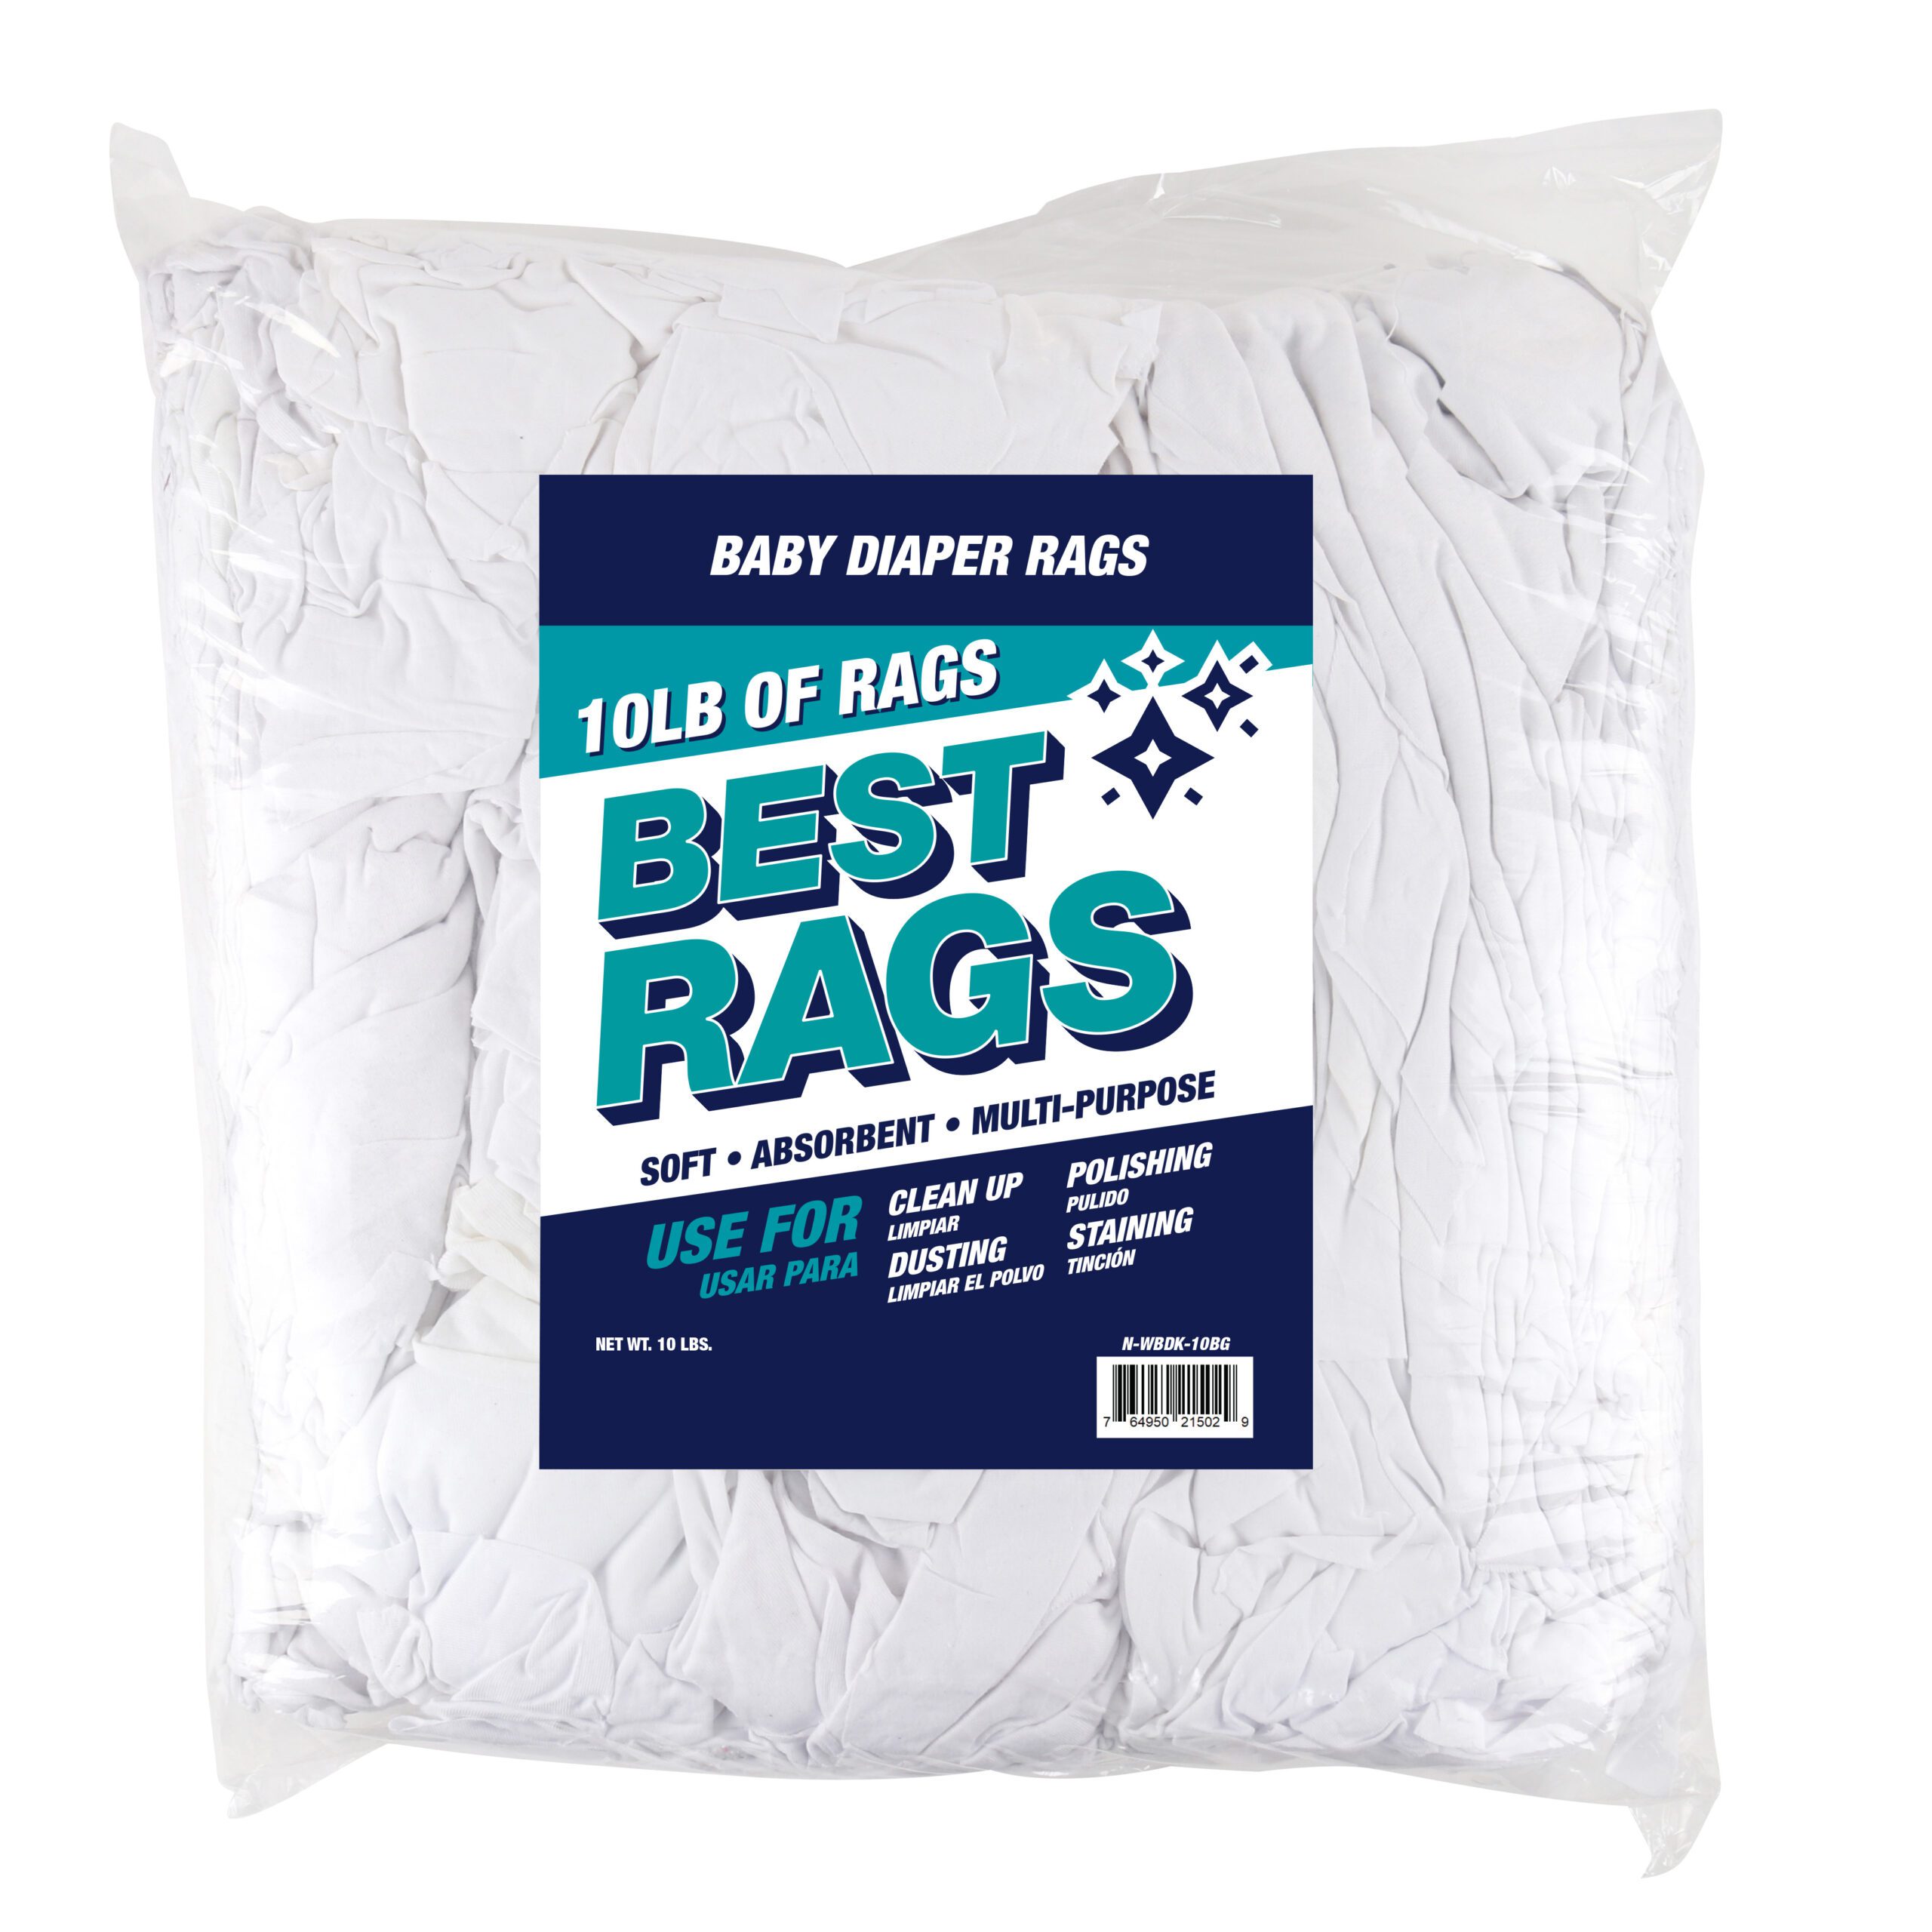 Diaper Rags – Beautiful Rags